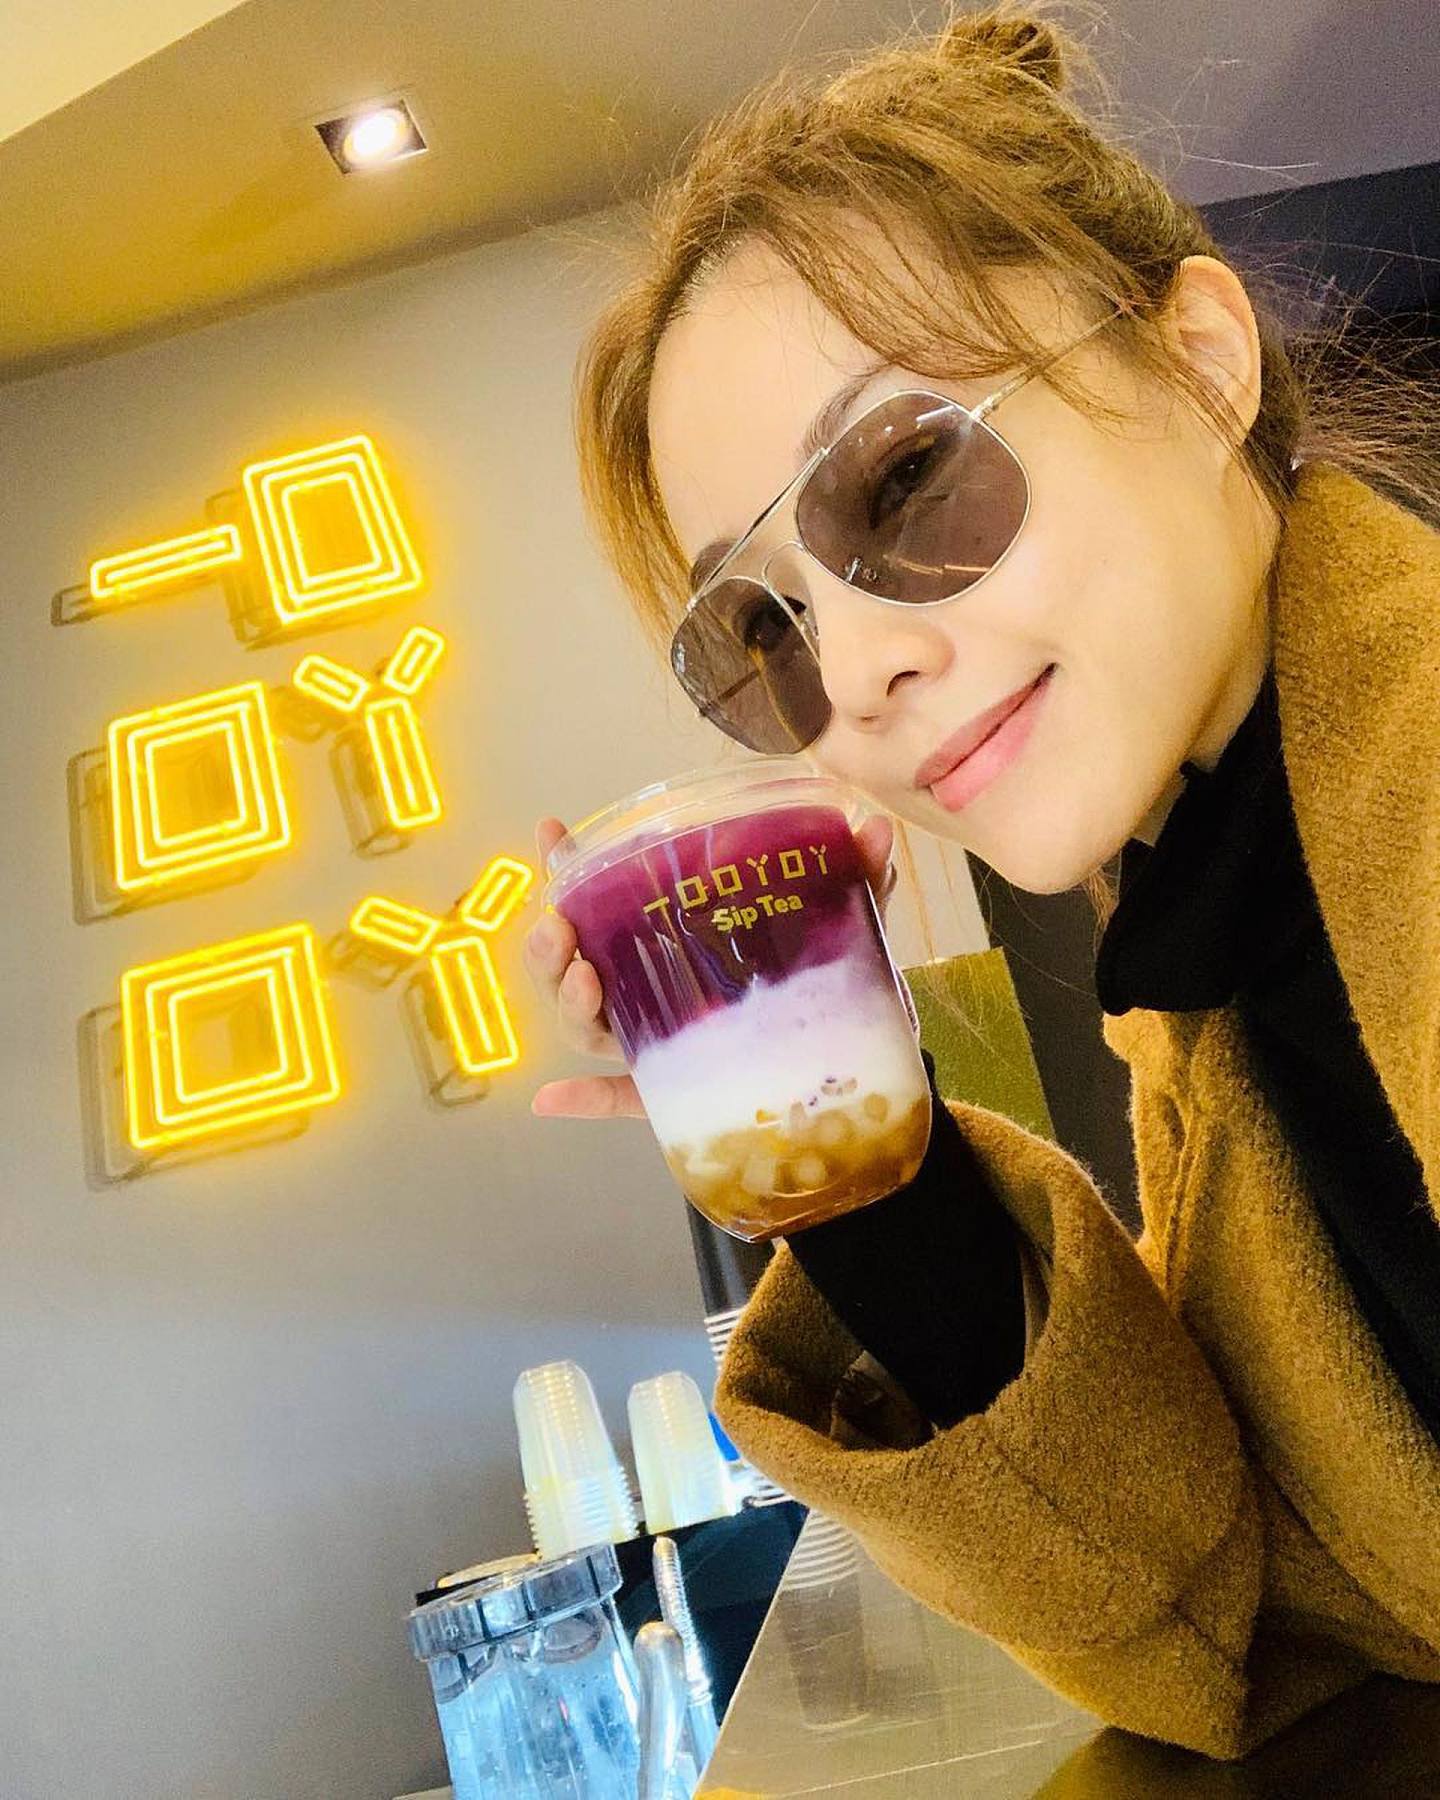 鄧麗欣（Stephy）主理的茶飲店「一口吖吖 1011 • Sip Tea」台北開幕，她投資的生意即使在疫市下也不受影響。（IG@stboo）